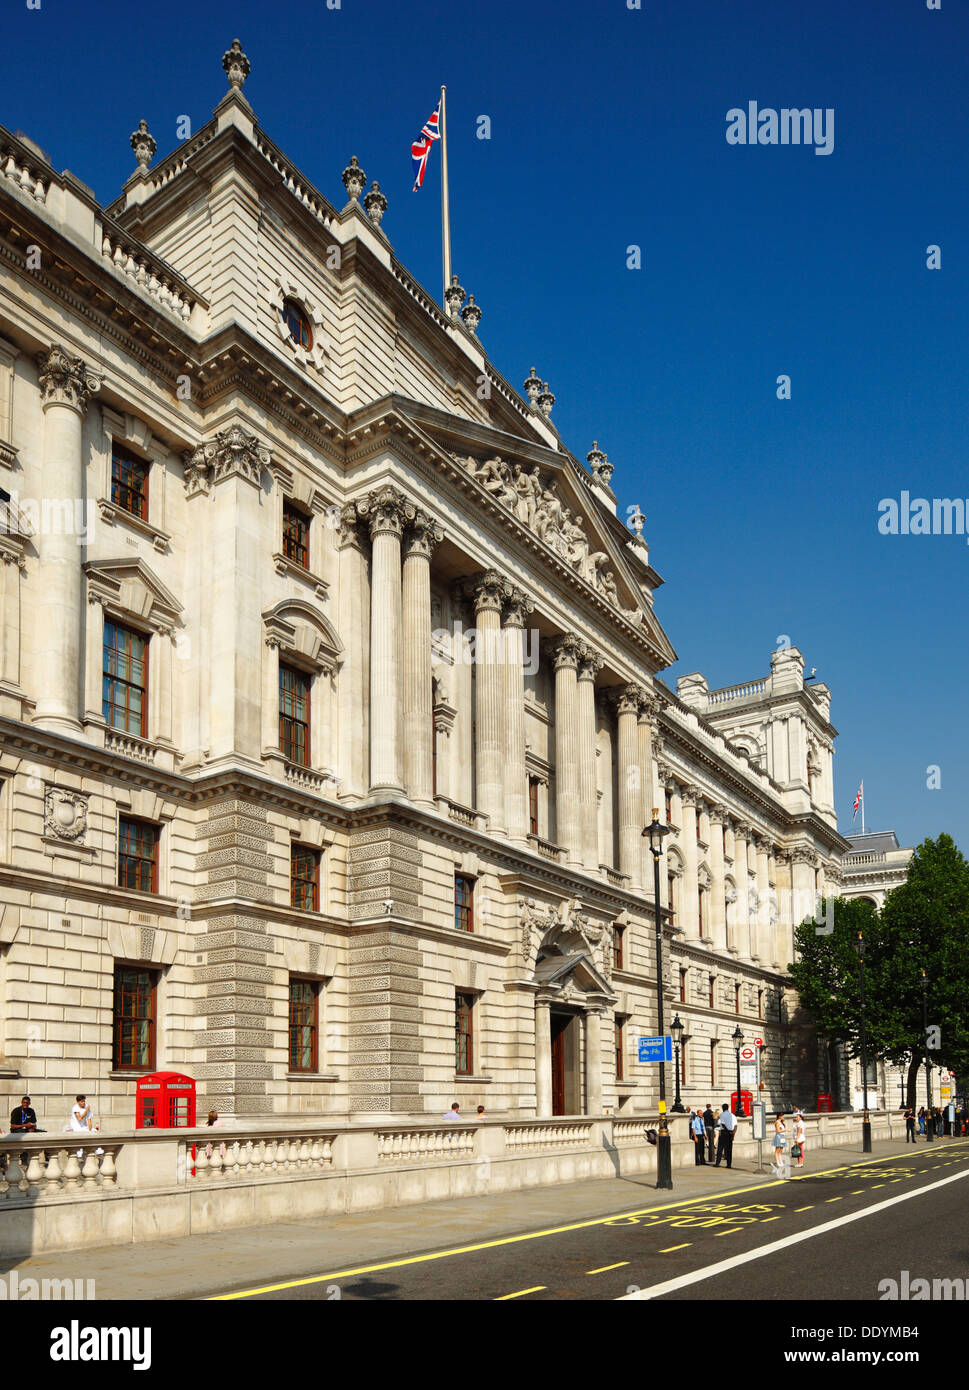 Le HM Revenue & Customs Office, et le ministère de la Culture, Médias et sports, Whitehall, Londres. Banque D'Images